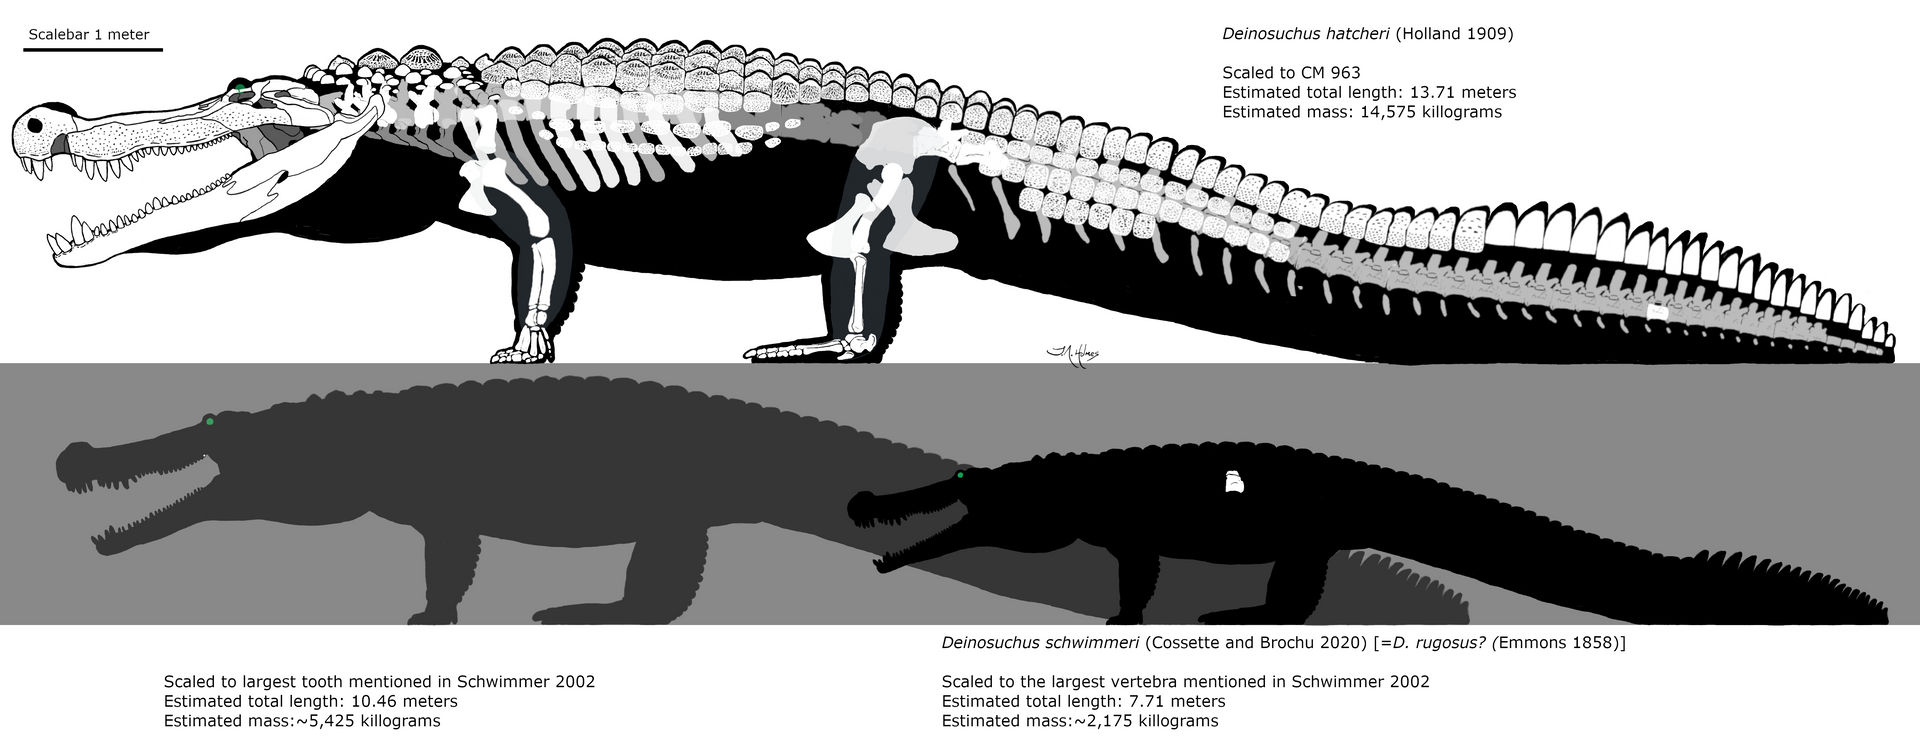 How big was Deinosuchus hatcheri? - Quora